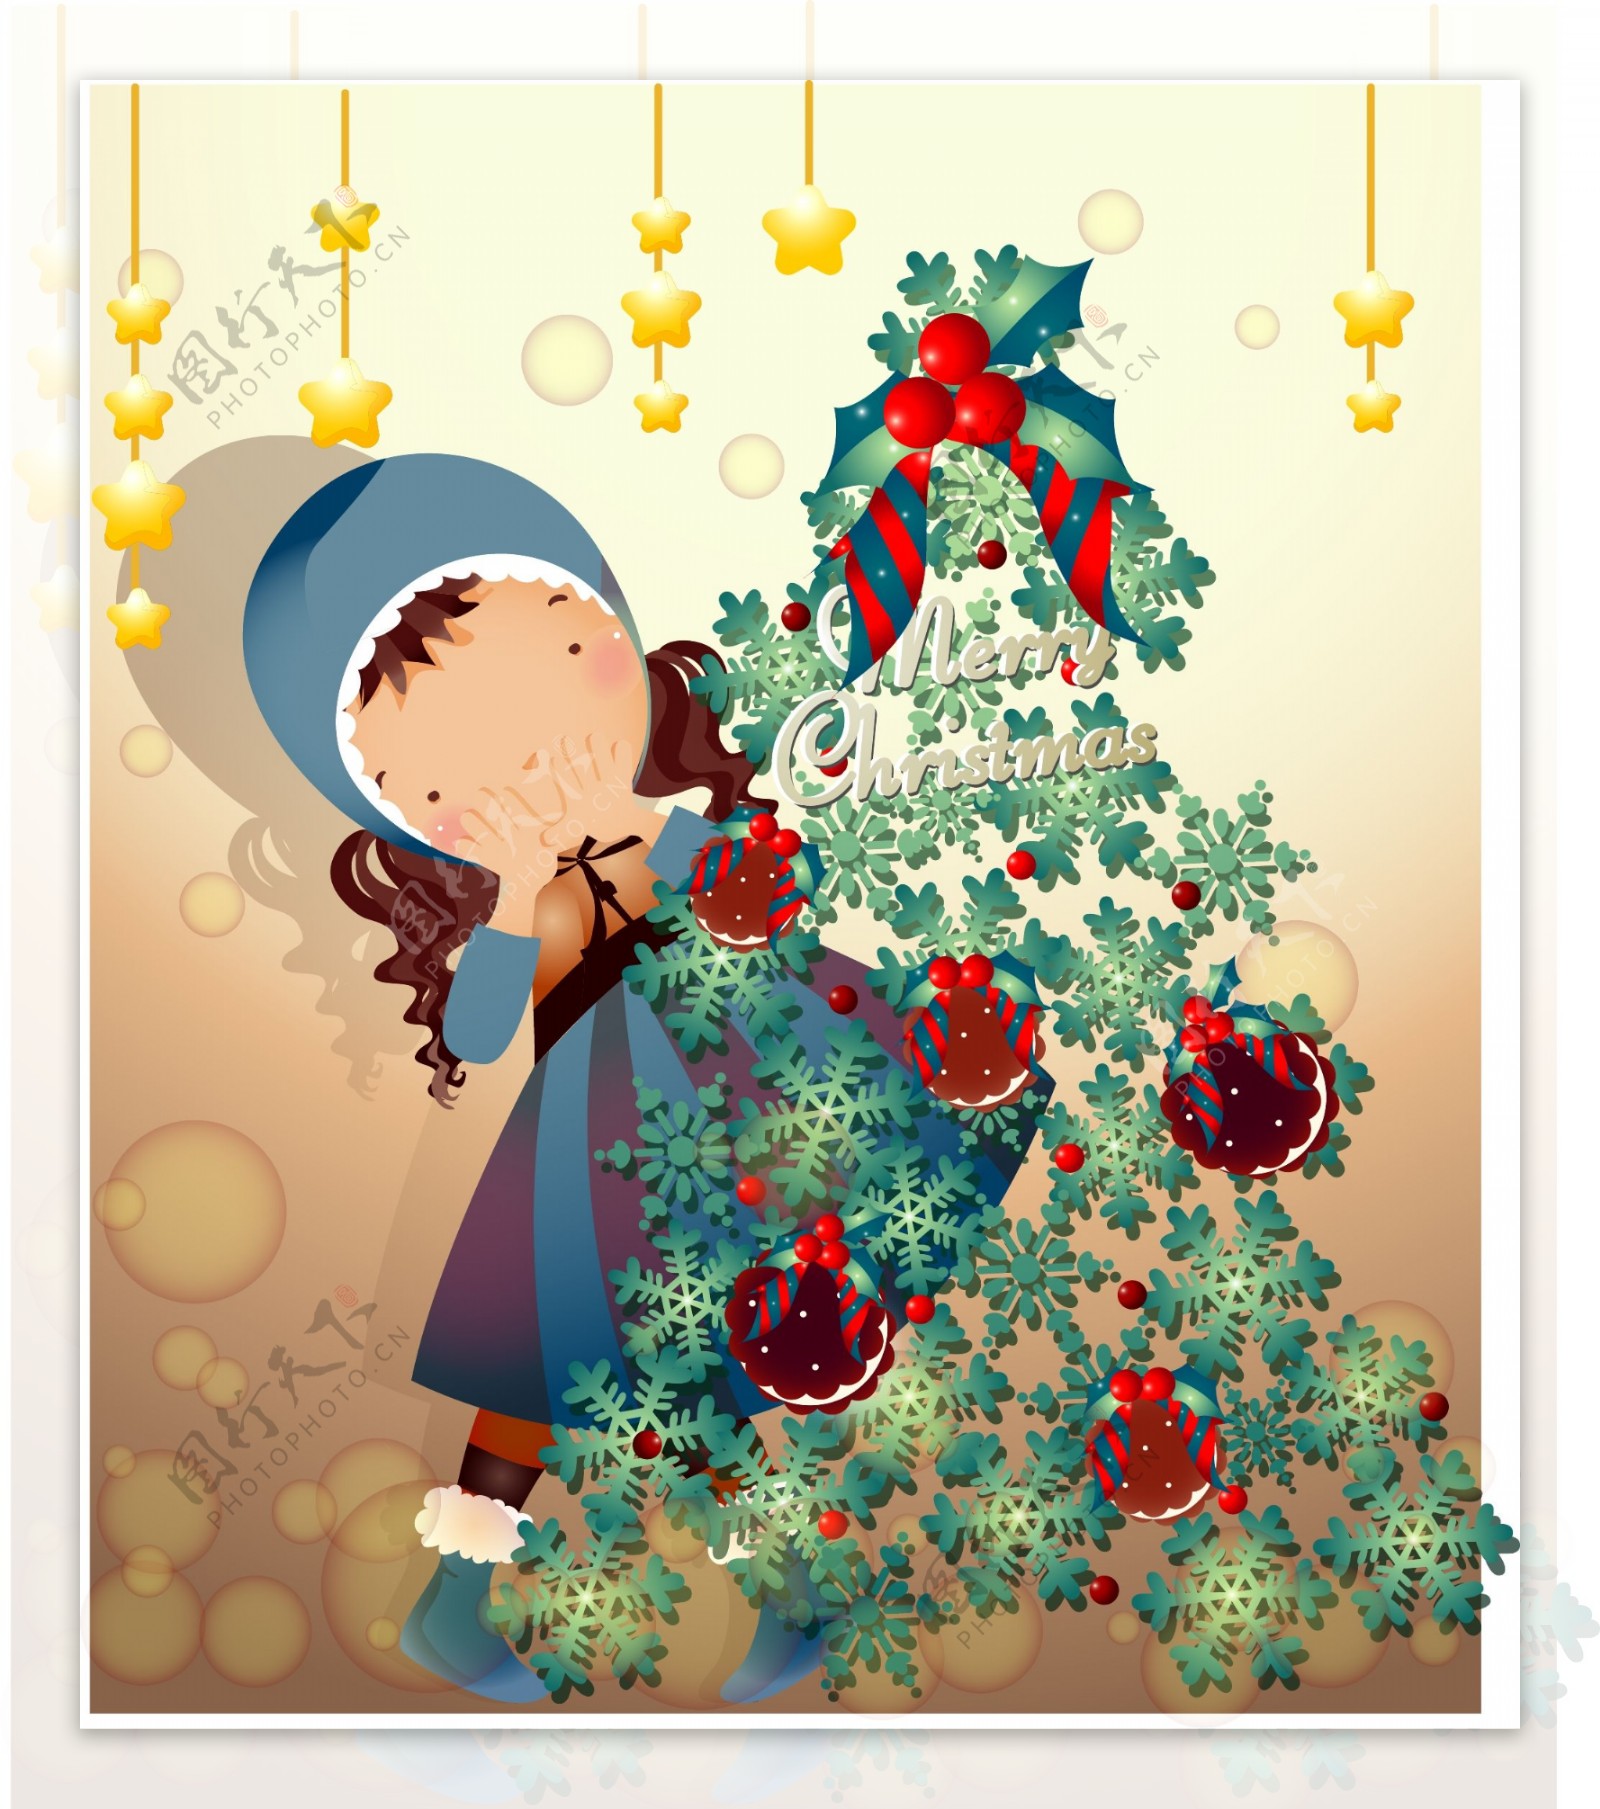 小女孩装扮的圣诞树图片